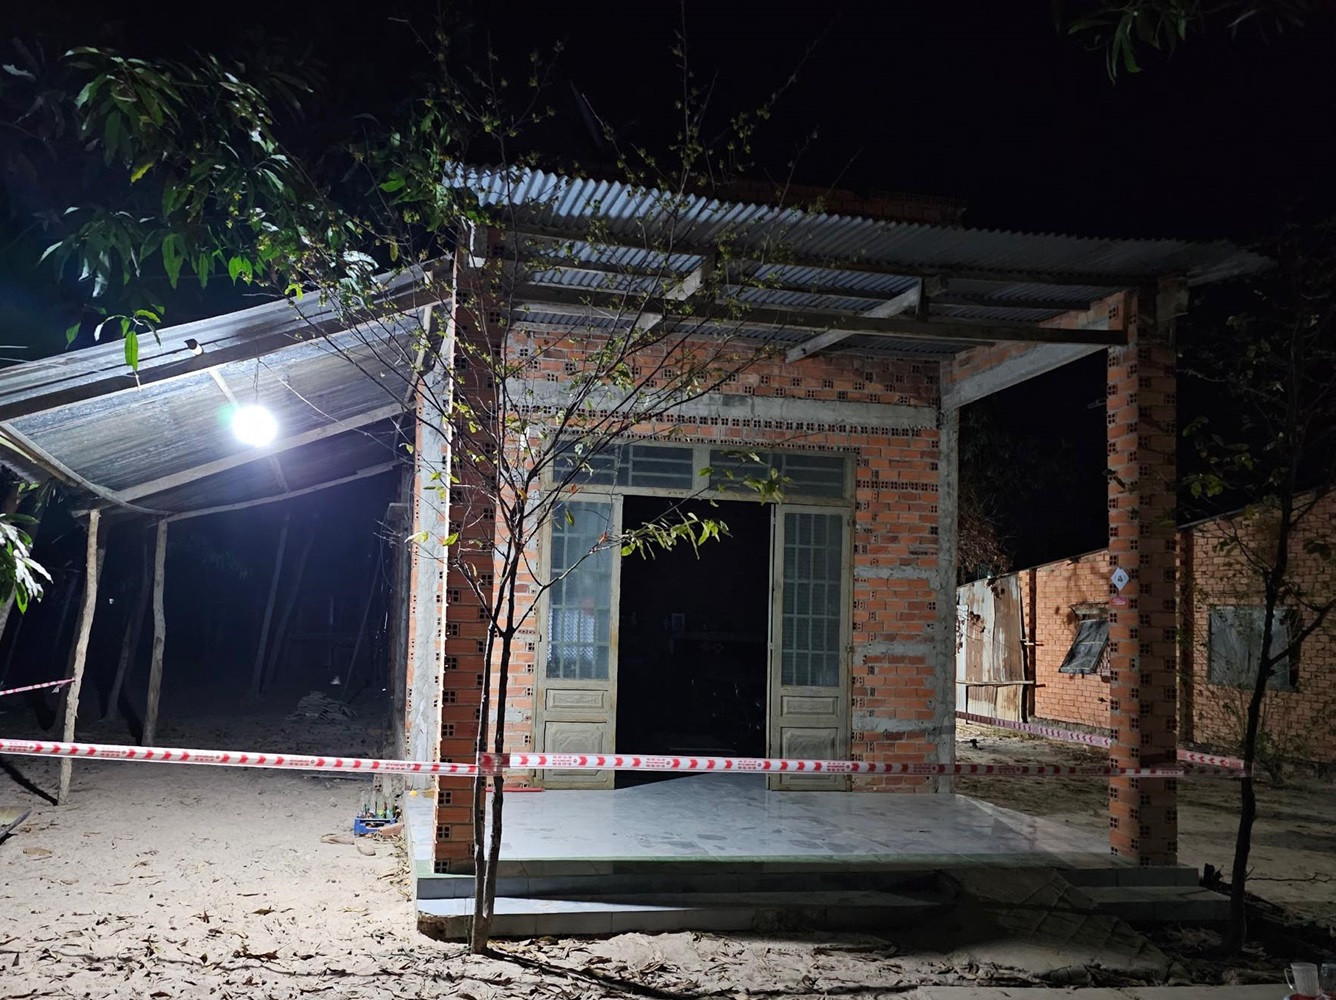  Căn nhà nơi bé V tử vong - Ảnh: VietNamNet